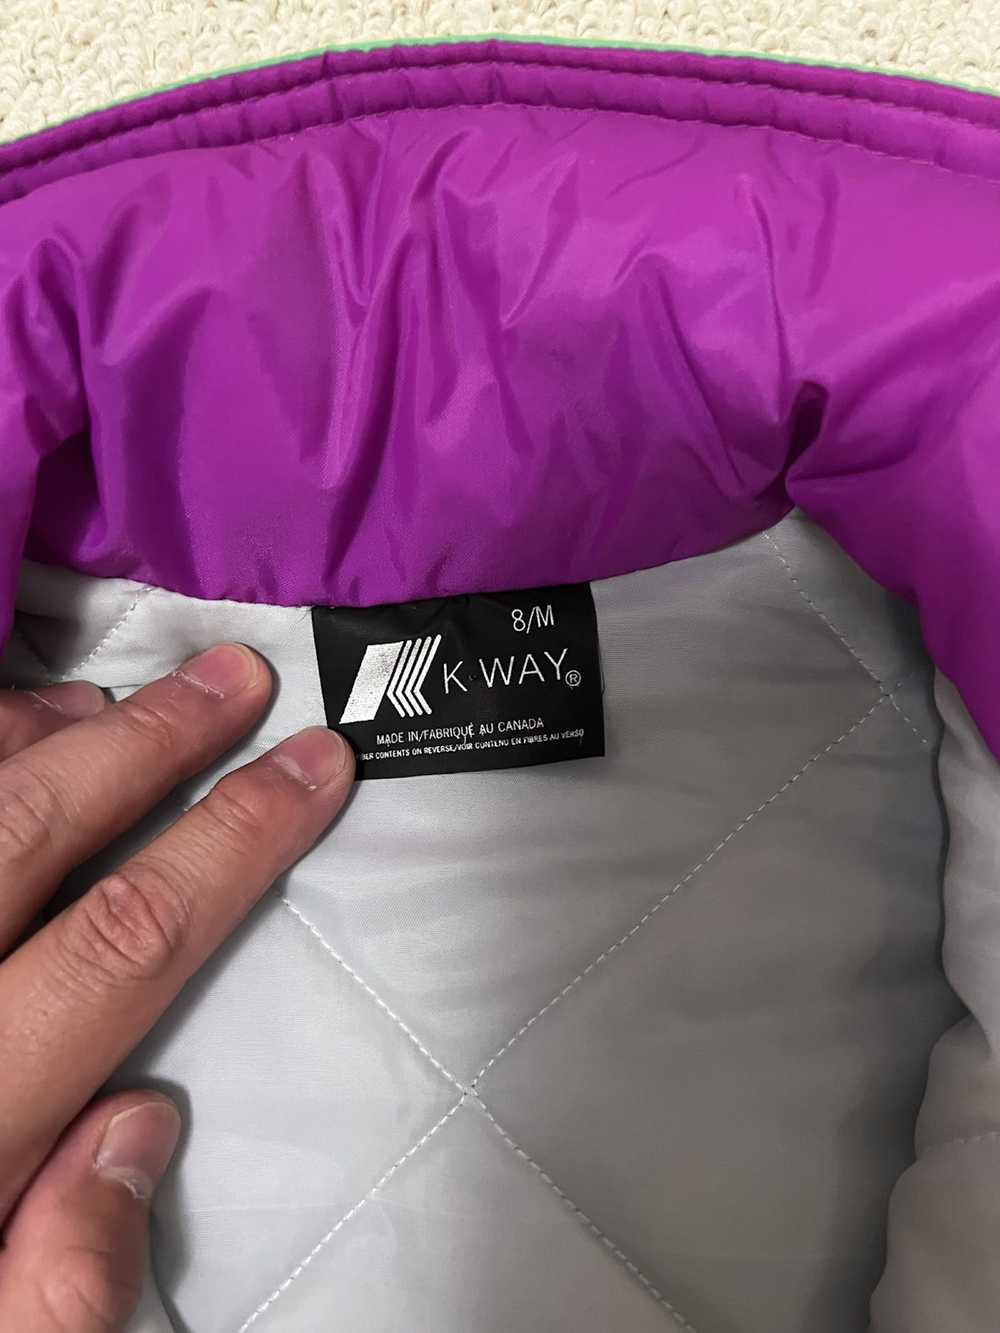 K Way × Kway Vintage K Way jacket - image 4